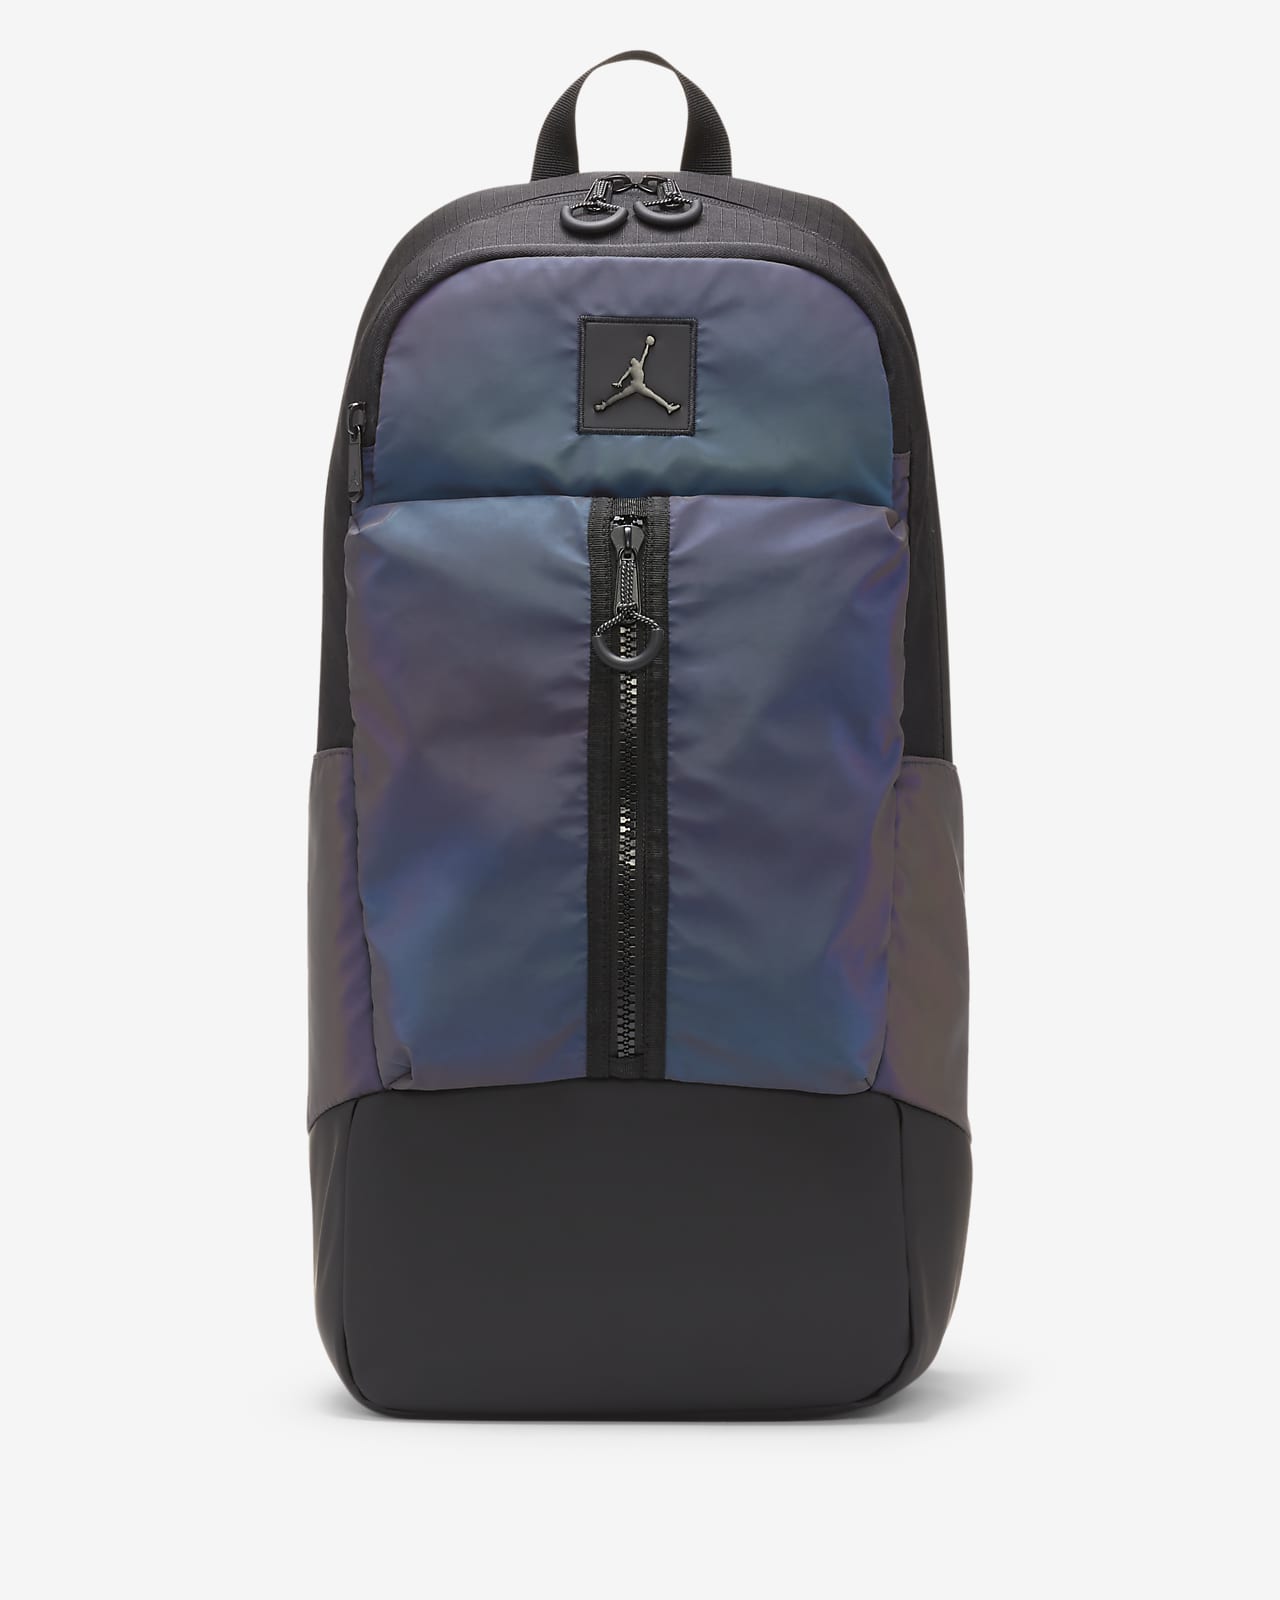 air jordan backpack large